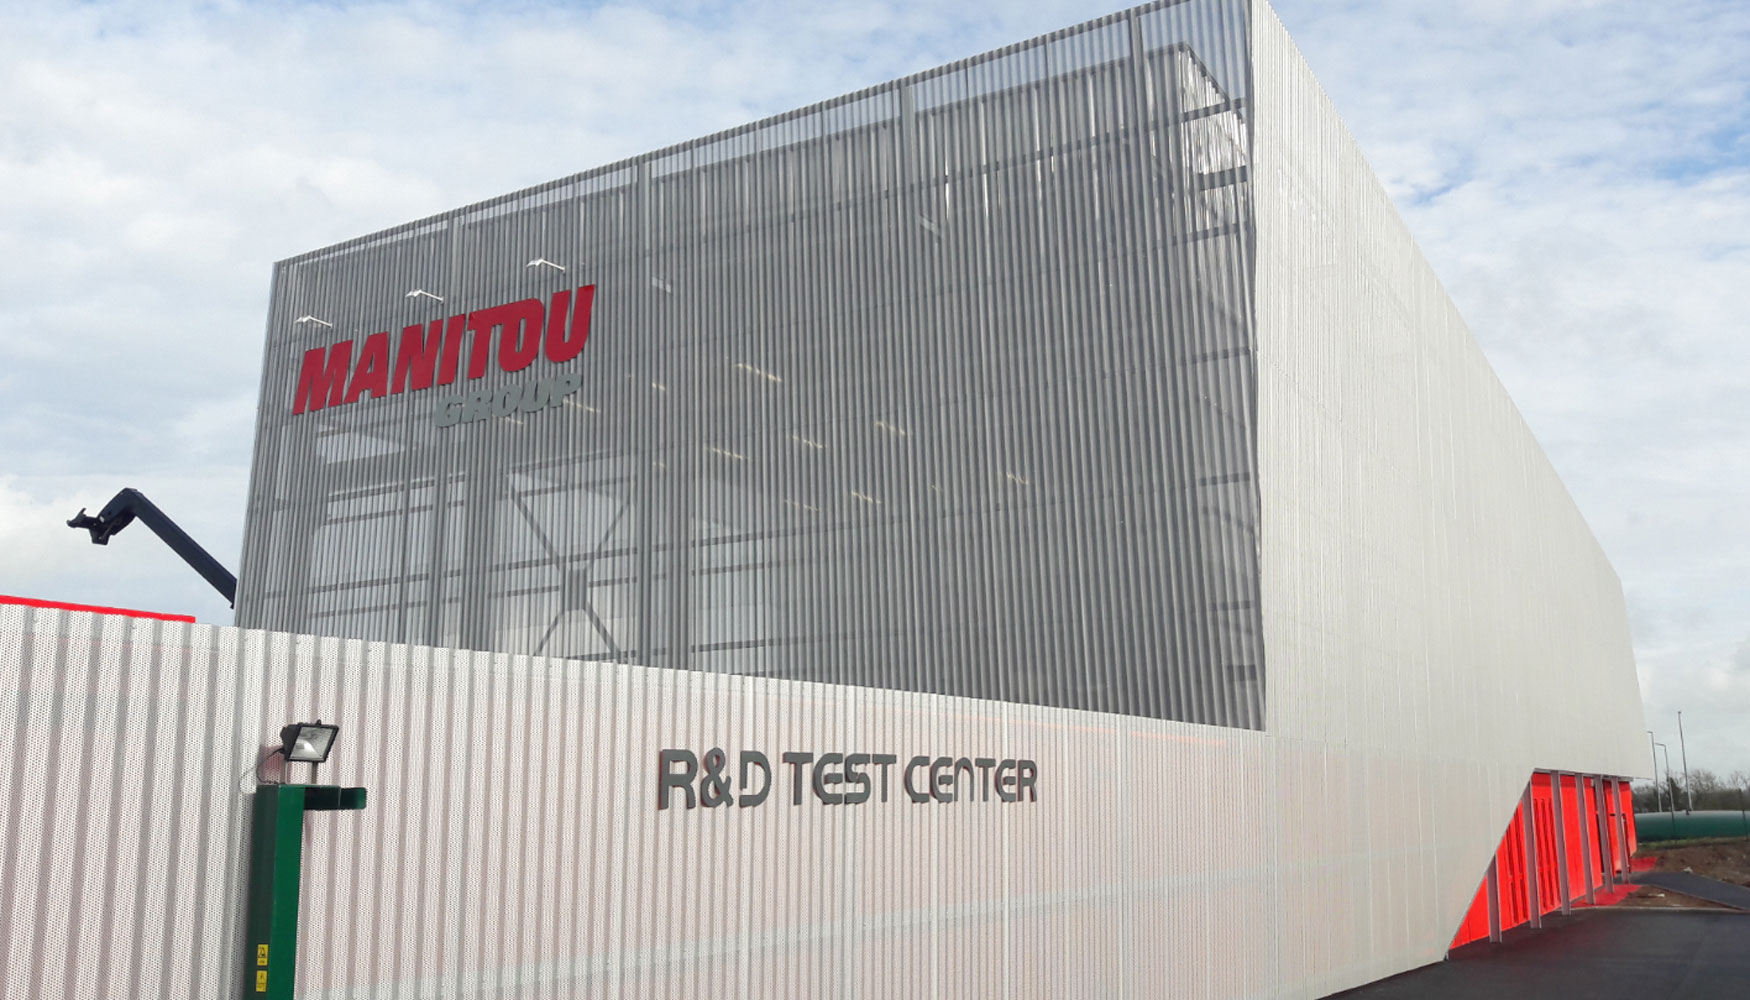 Nuevo I+D Test Center del Grupo Manitou